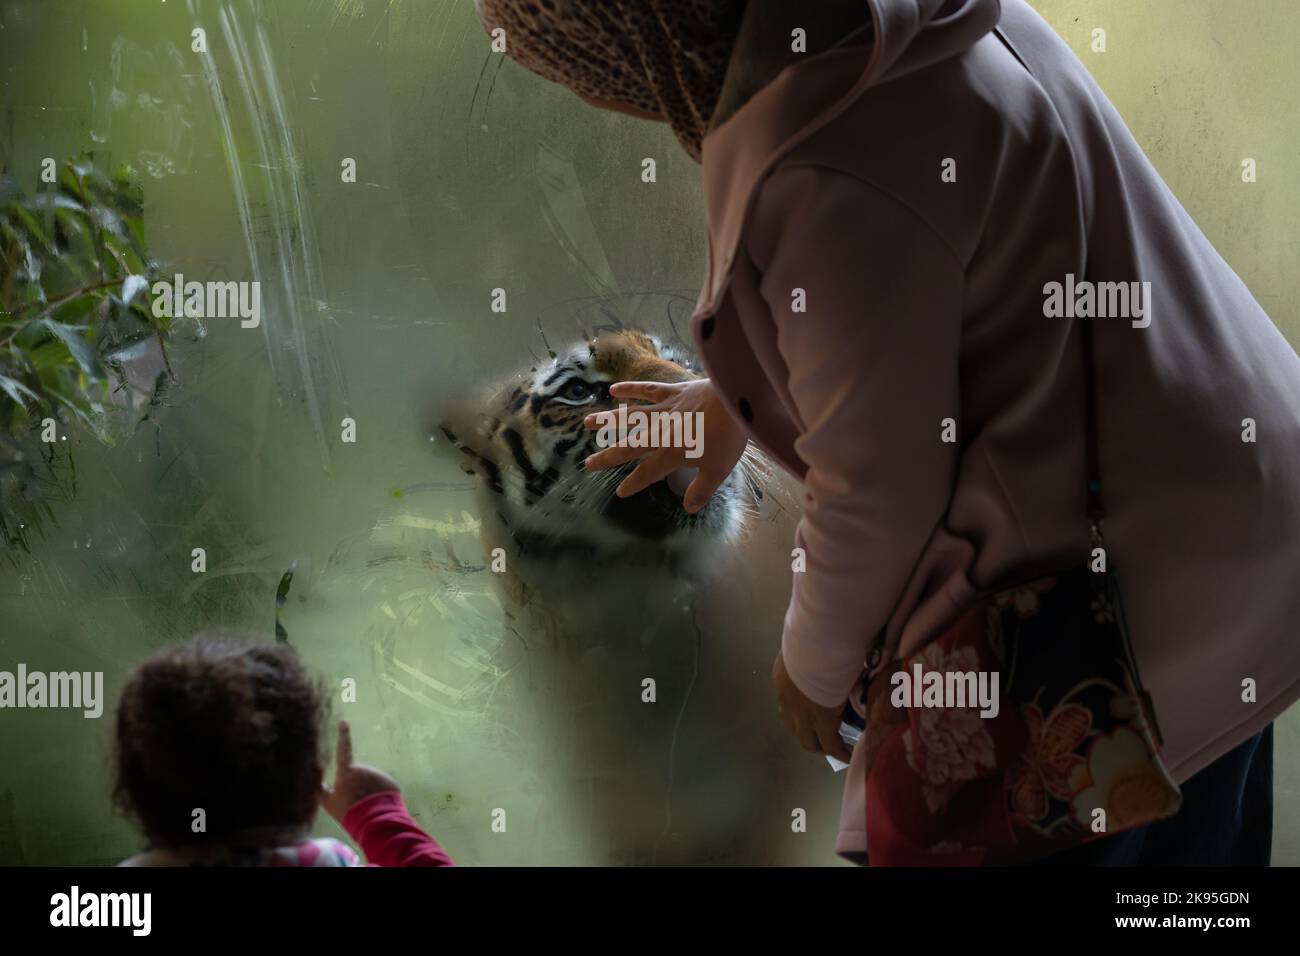 Femme touche le verre qui la sépare du tigre, femme avec voile au zoo Banque D'Images